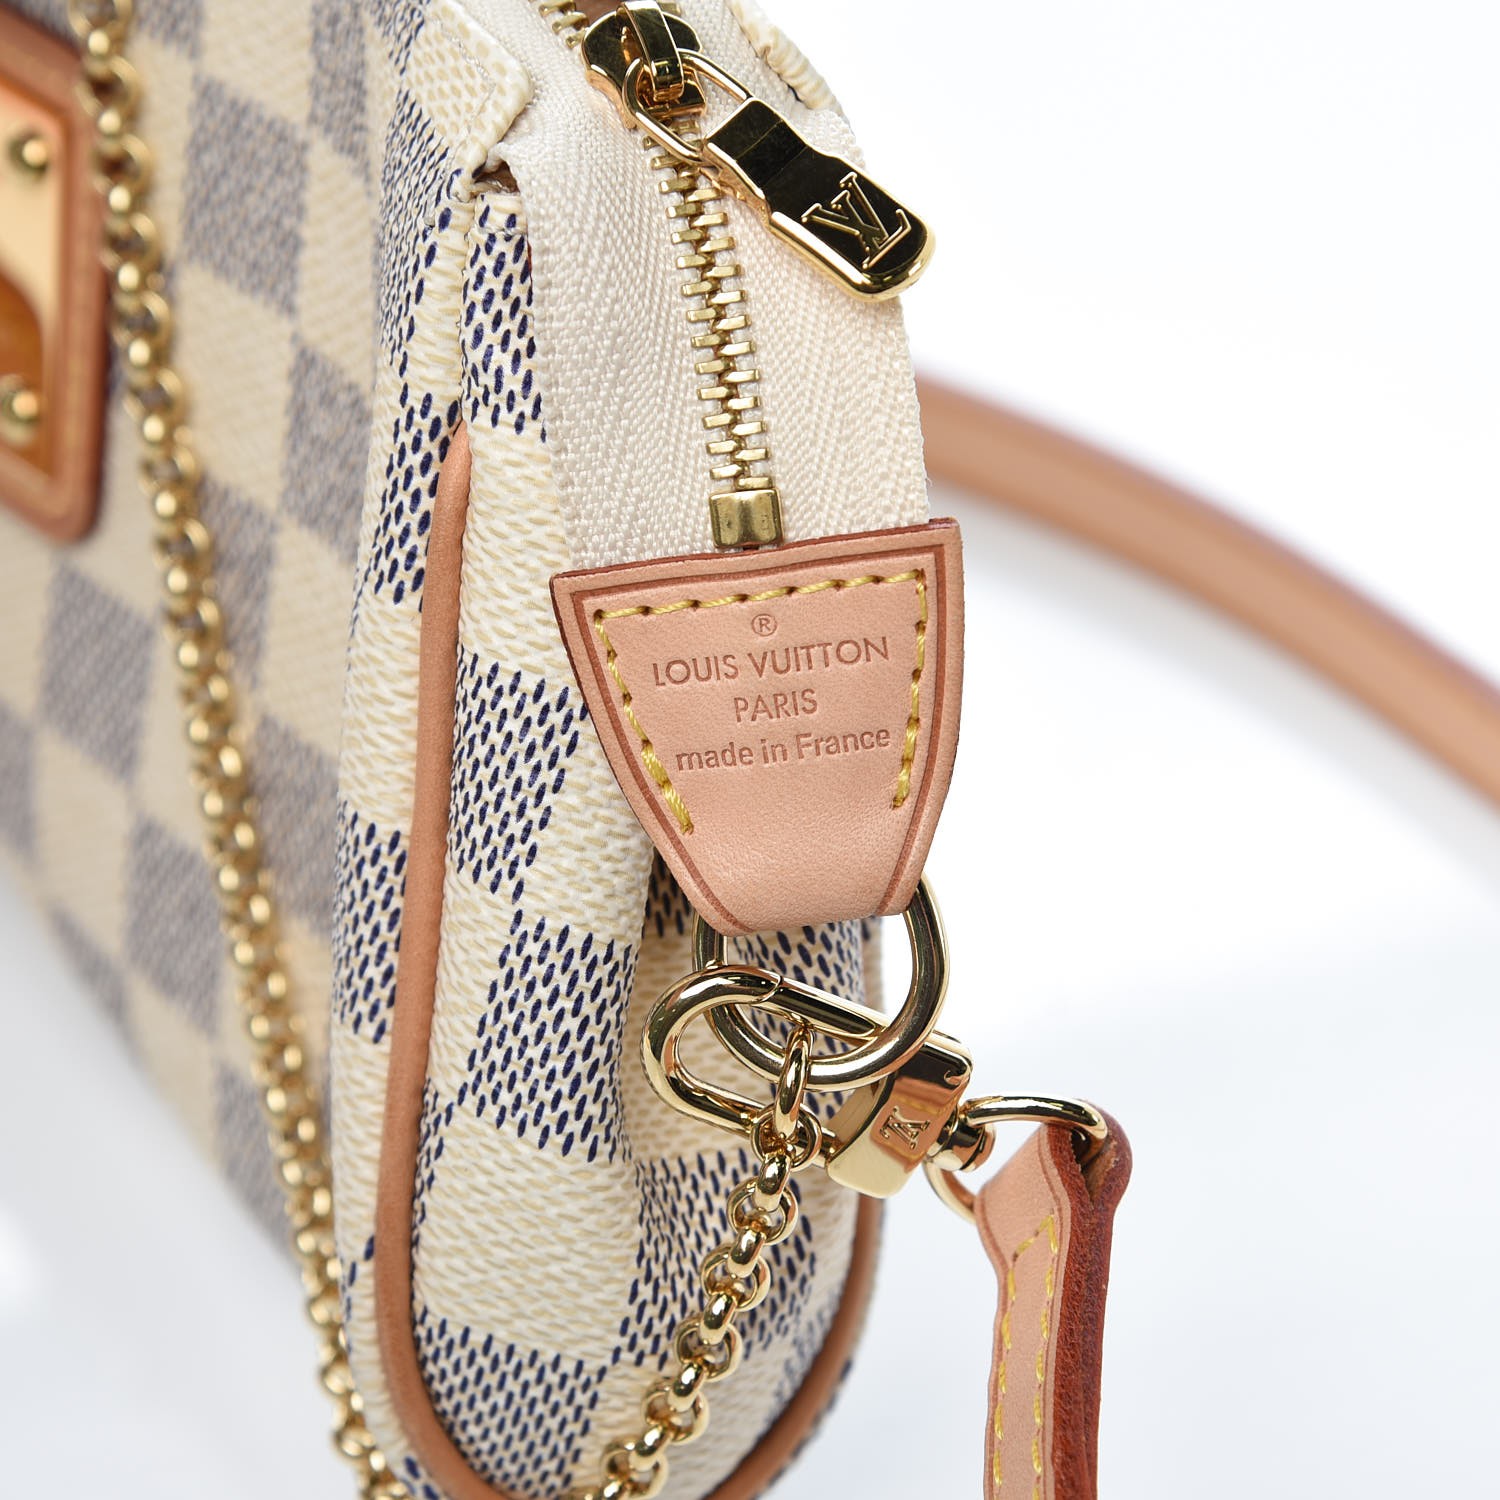 Louis Vuitton Damier Ebene Eva Shoulder Bag 2way N55213 Lv Auction